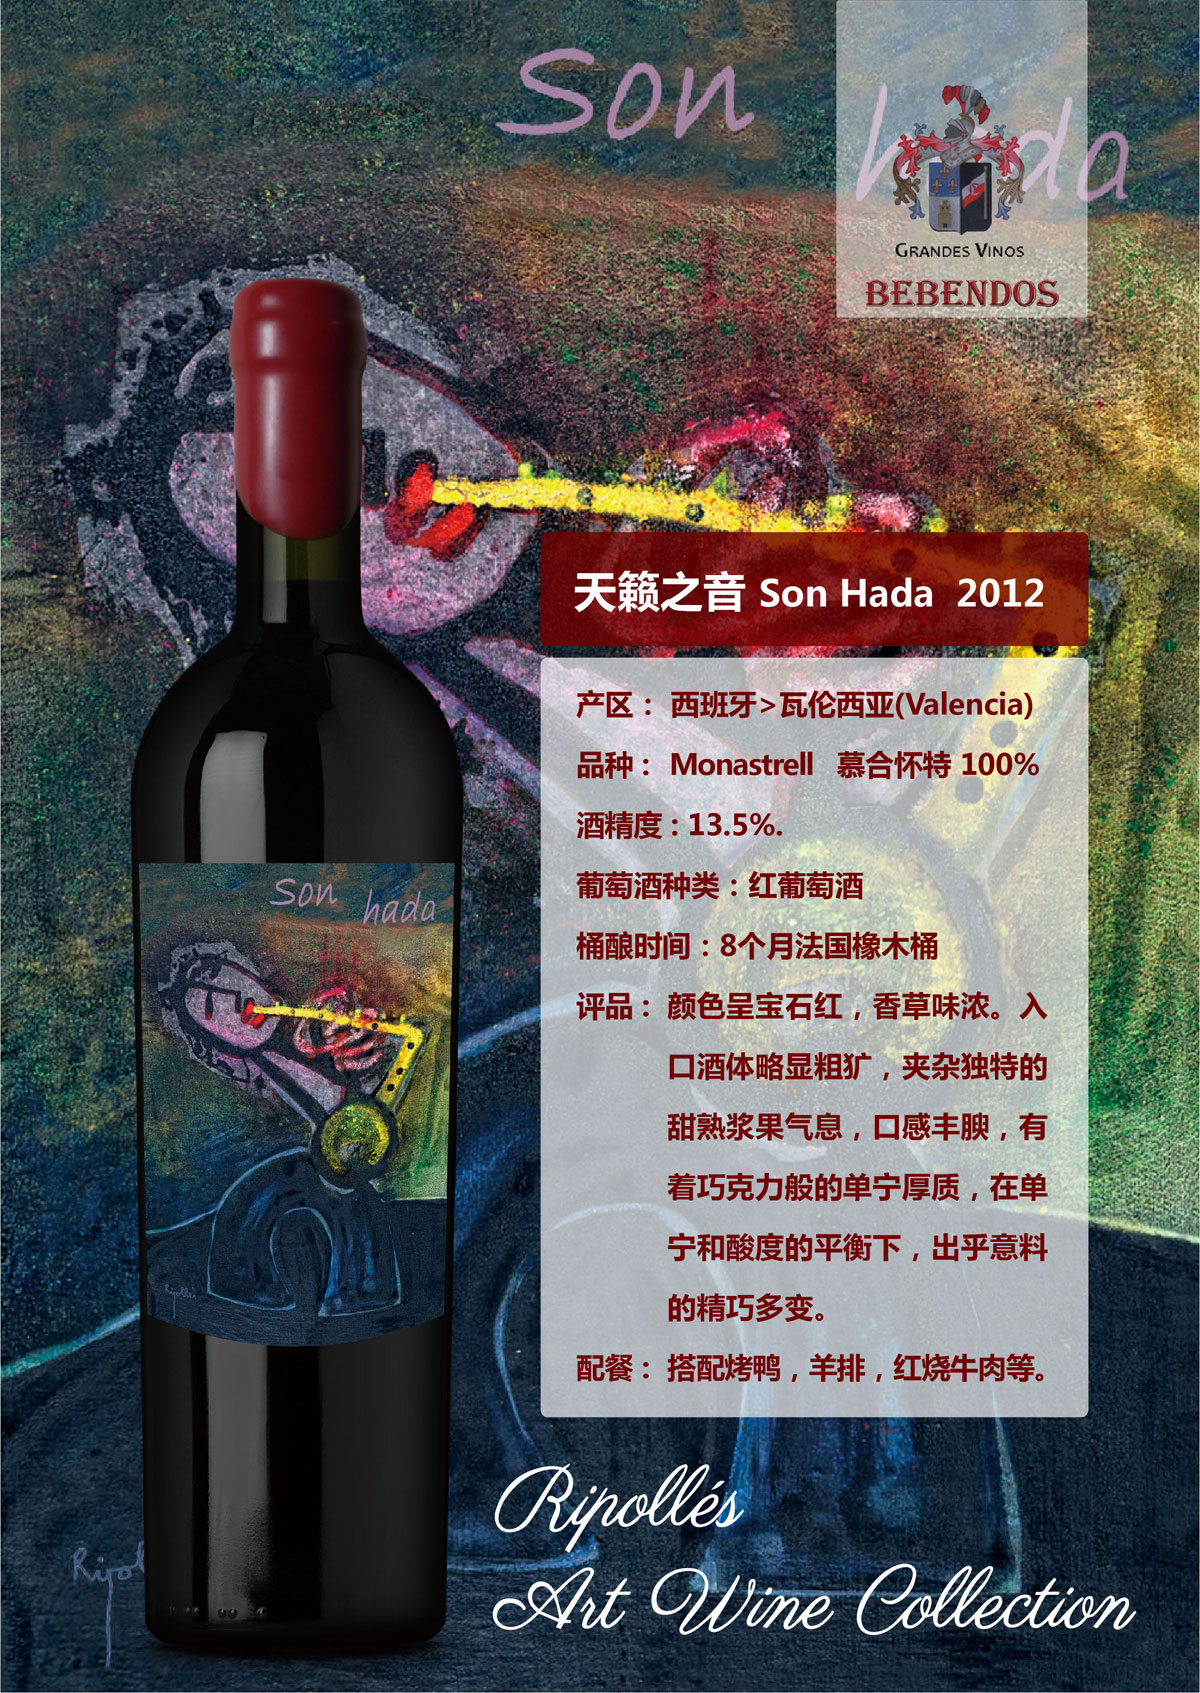 西班牙艺术酒庄画外之音系列慕合怀特天籁之音D.O.P干红葡萄酒红酒